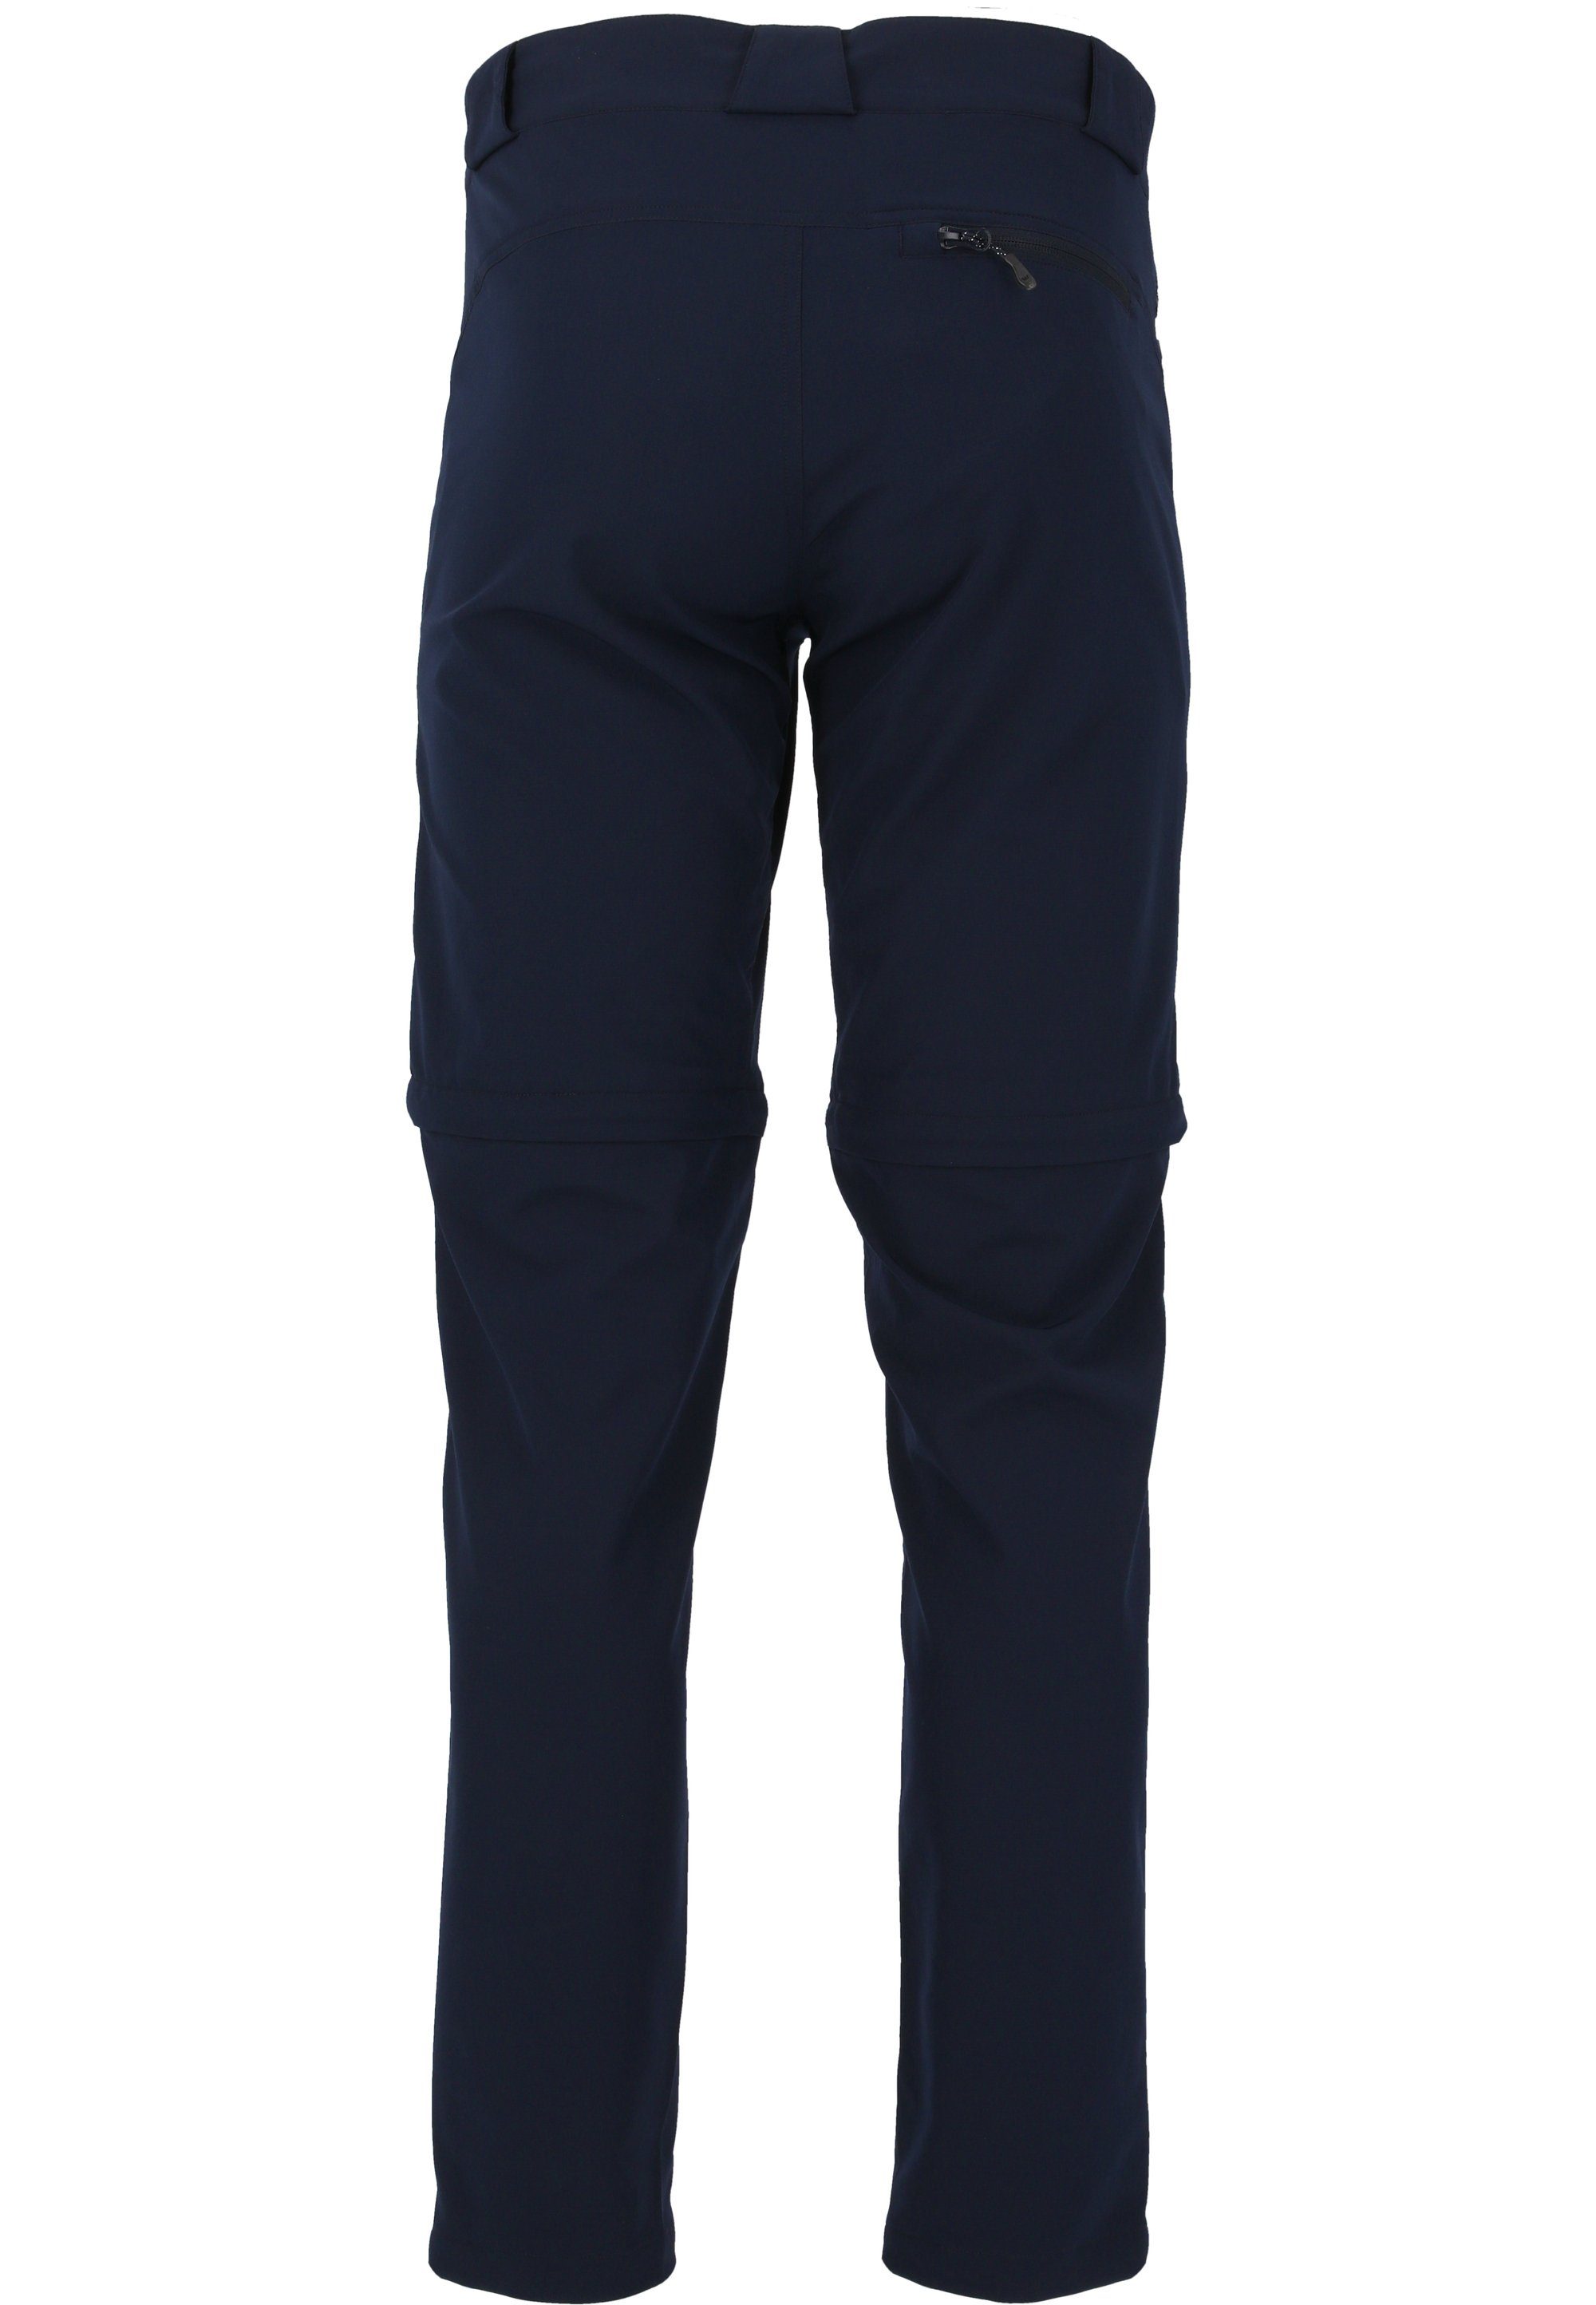 WHISTLER Outdoorhose Verwendung oder Hose Gerdi Shorts als dank dunkelblau Zip-Off-Funktion zur